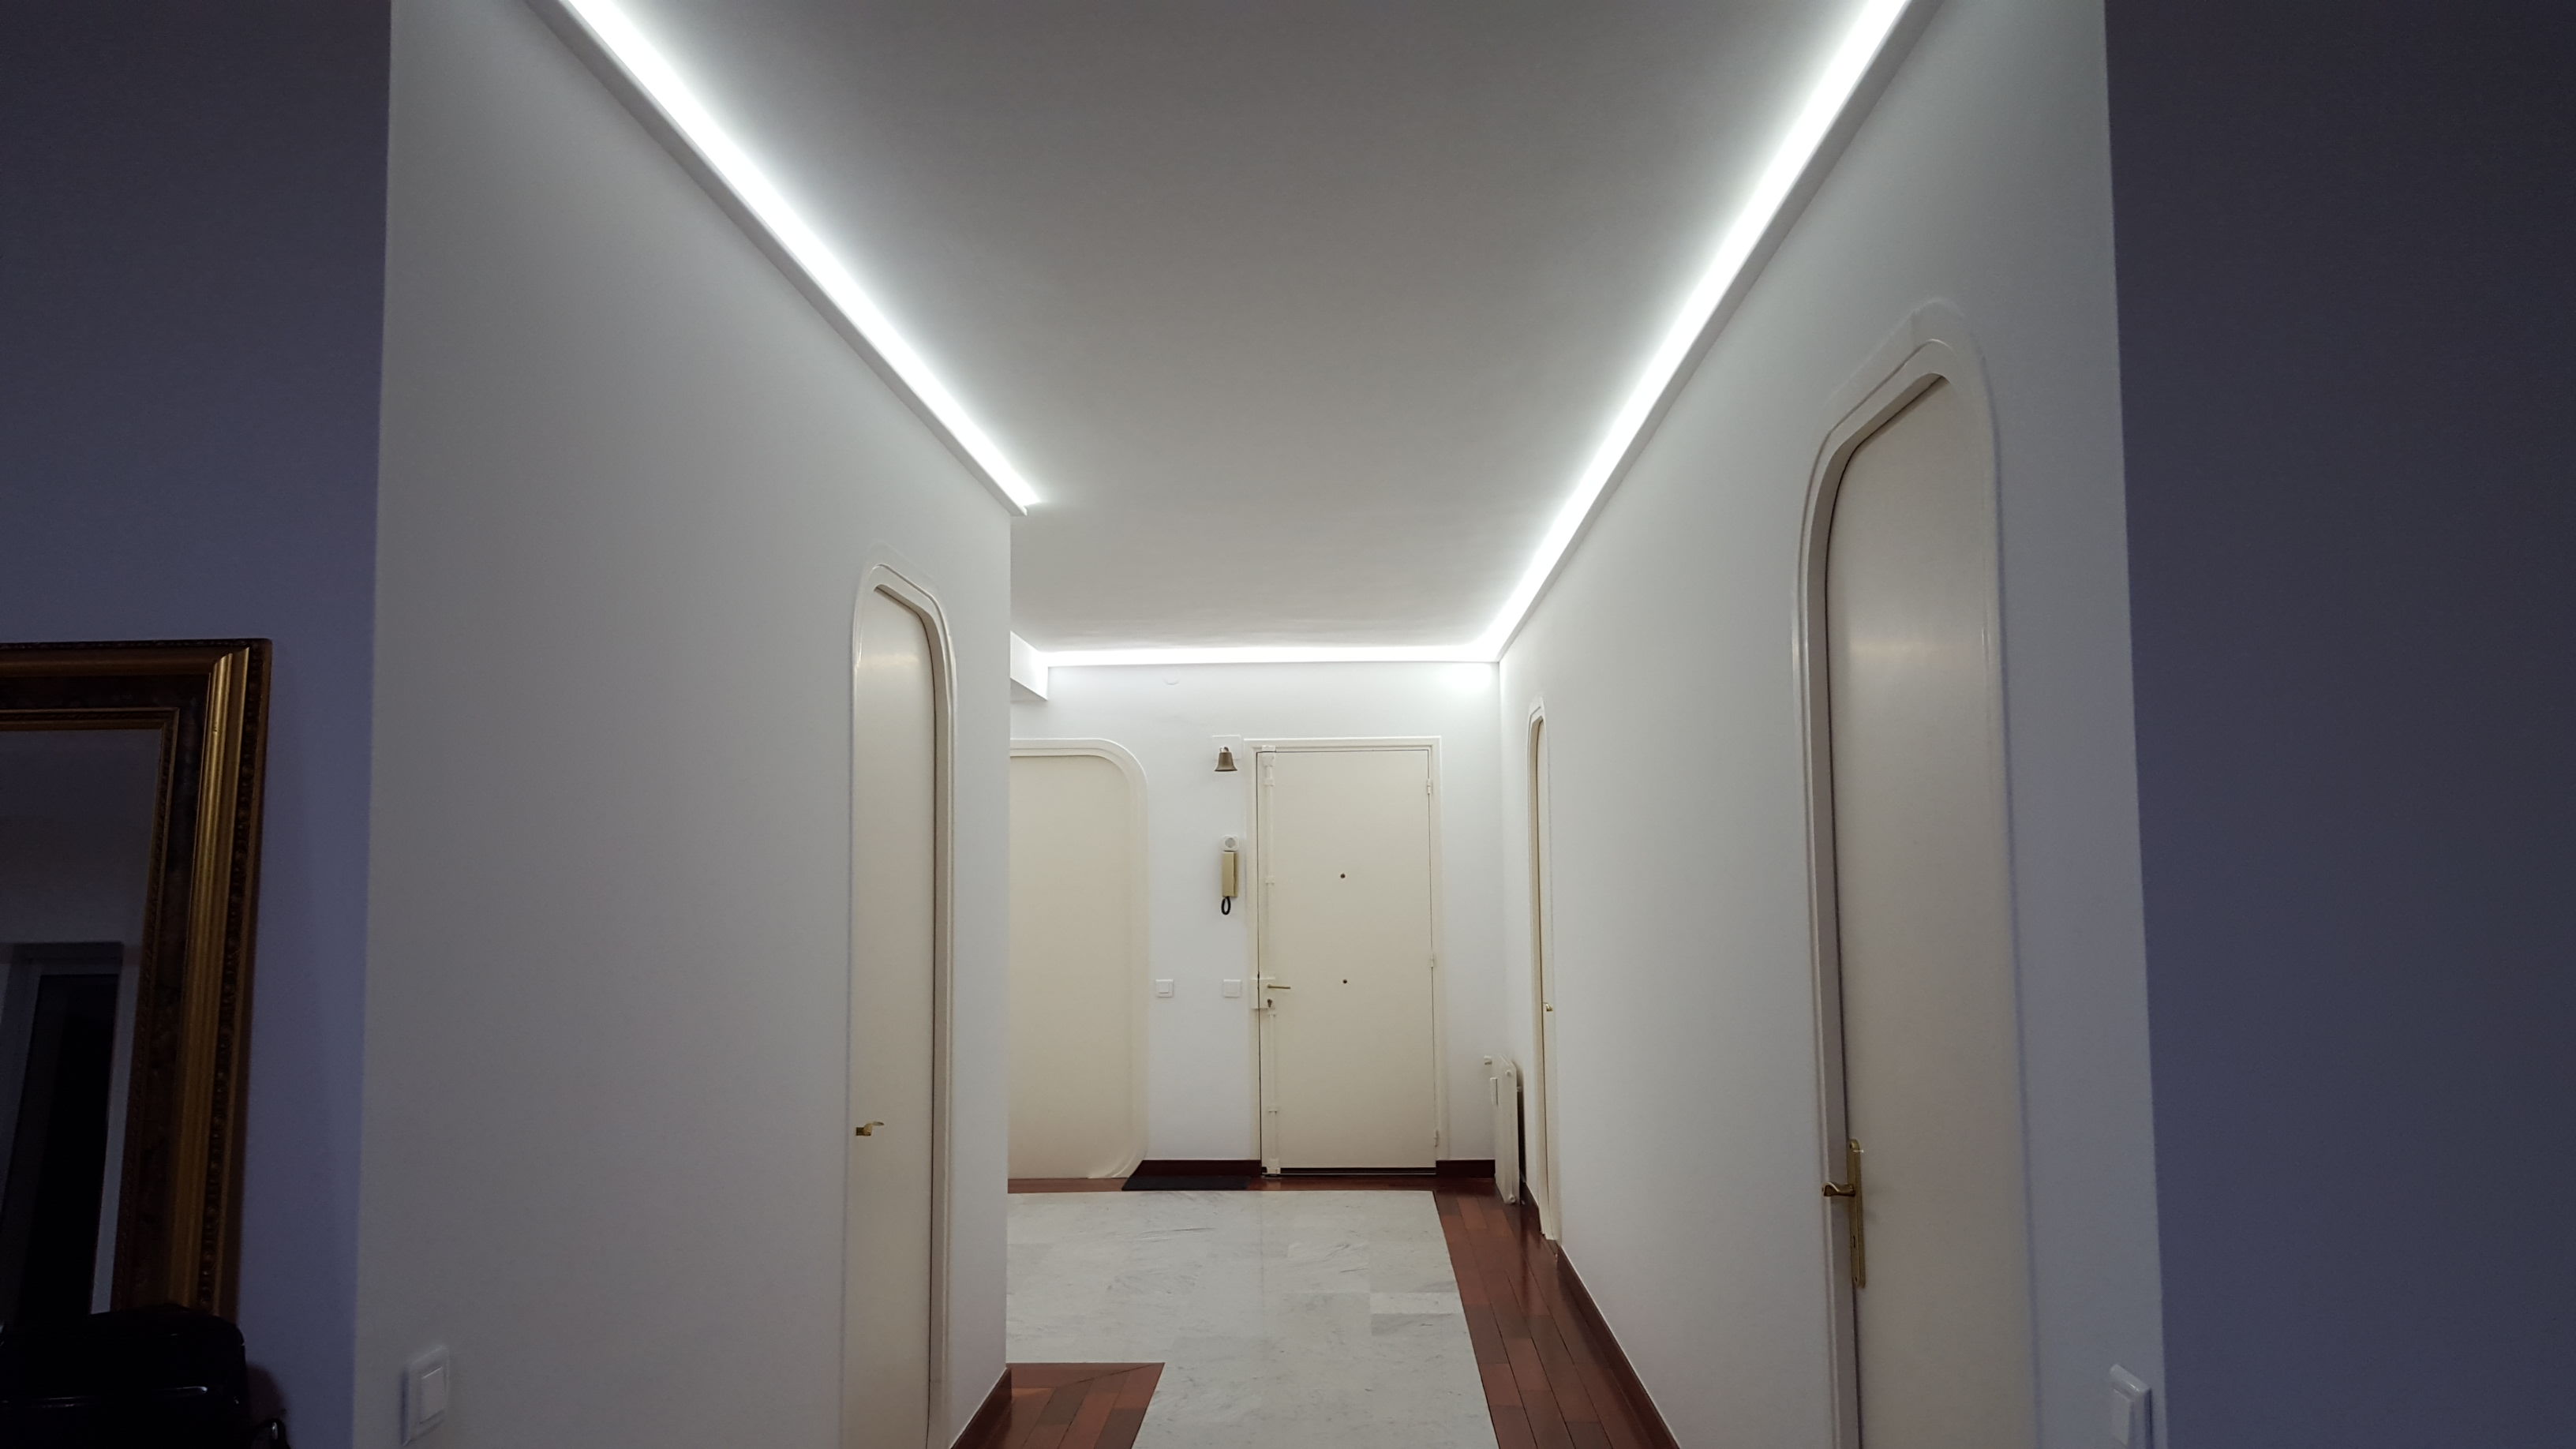 LED hallway lights